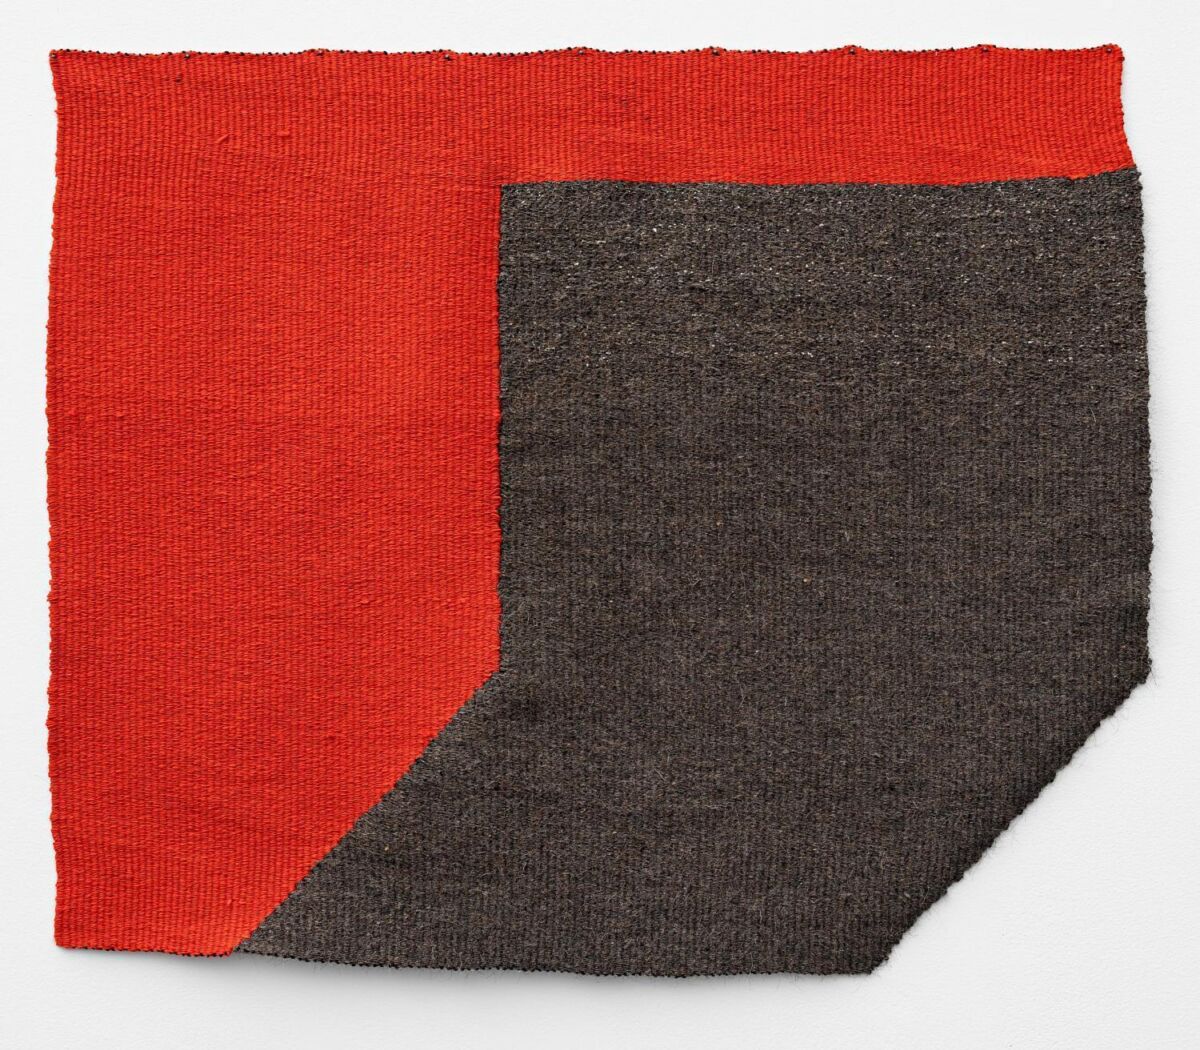 To vevde tøystykker satt sammen: Ett i rødt og ett i brunt. Foto av tekstil.